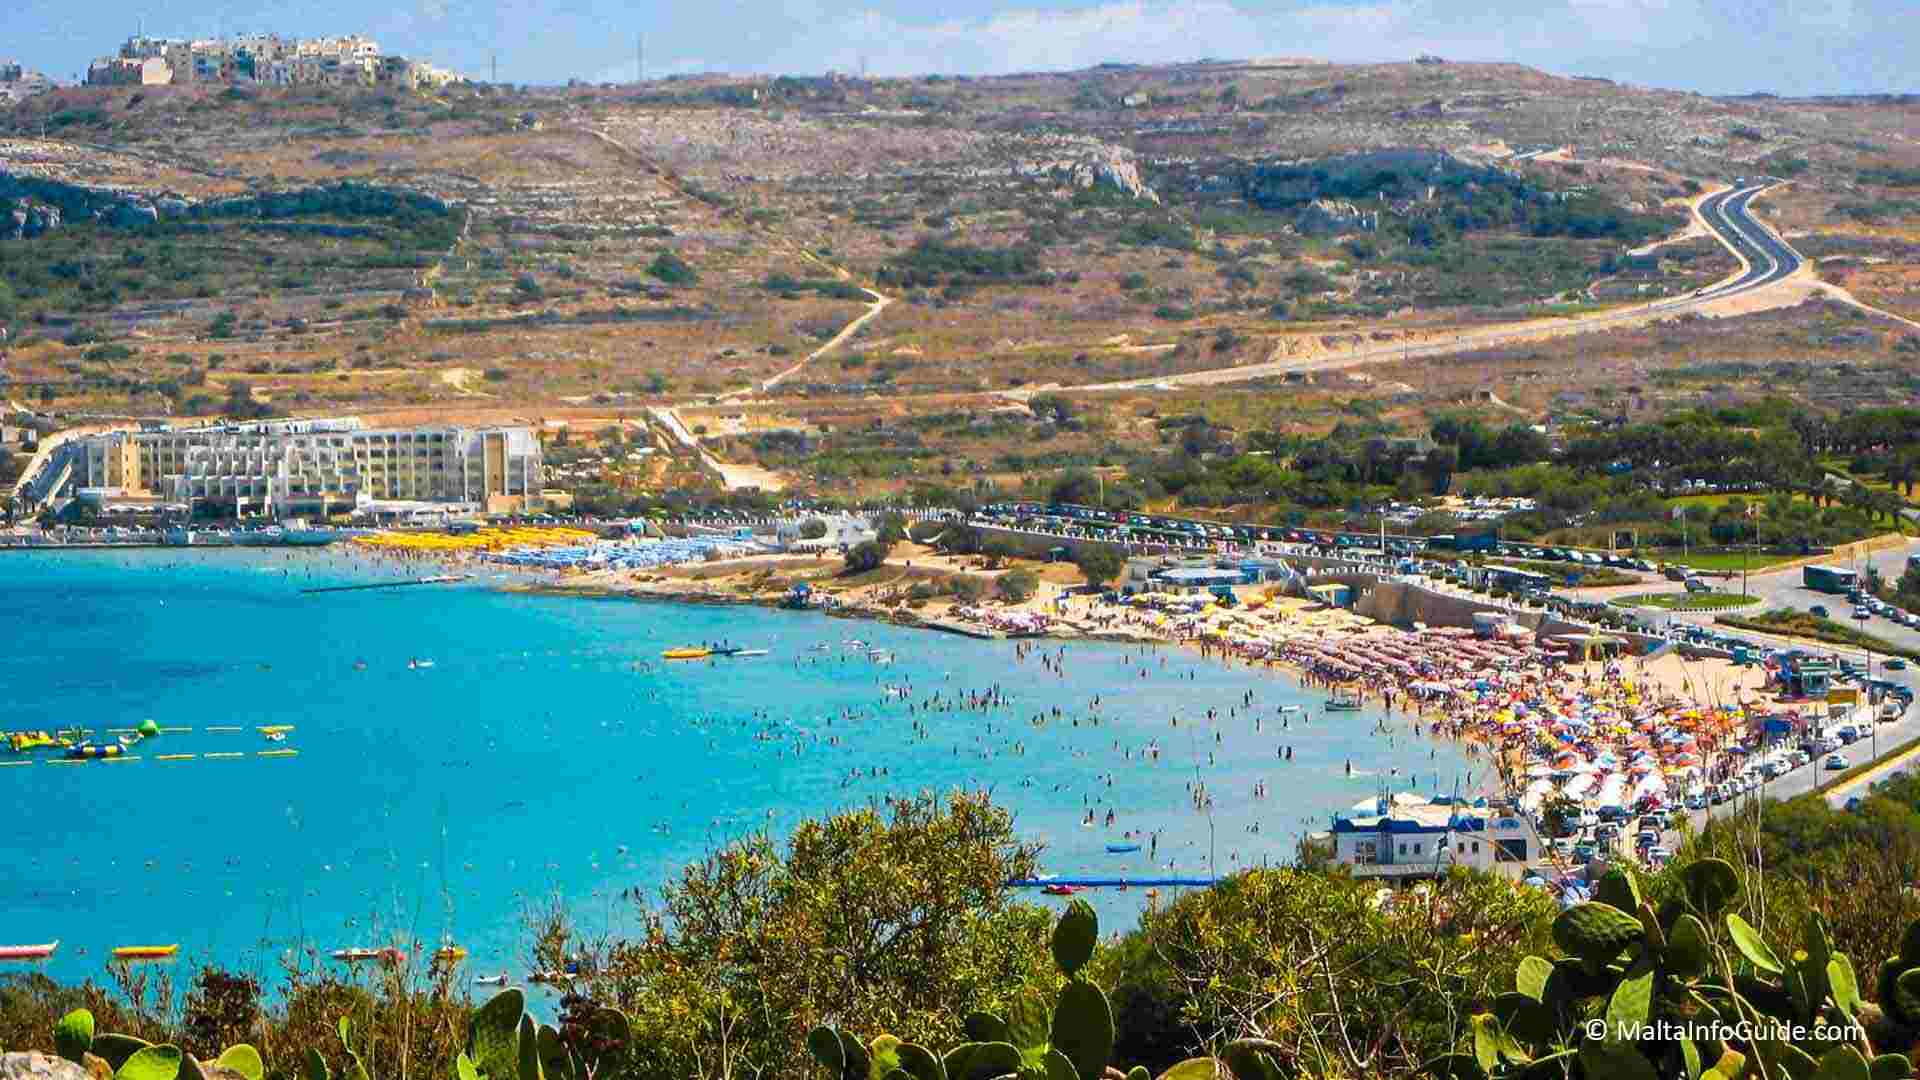 A view of Mellieha beach